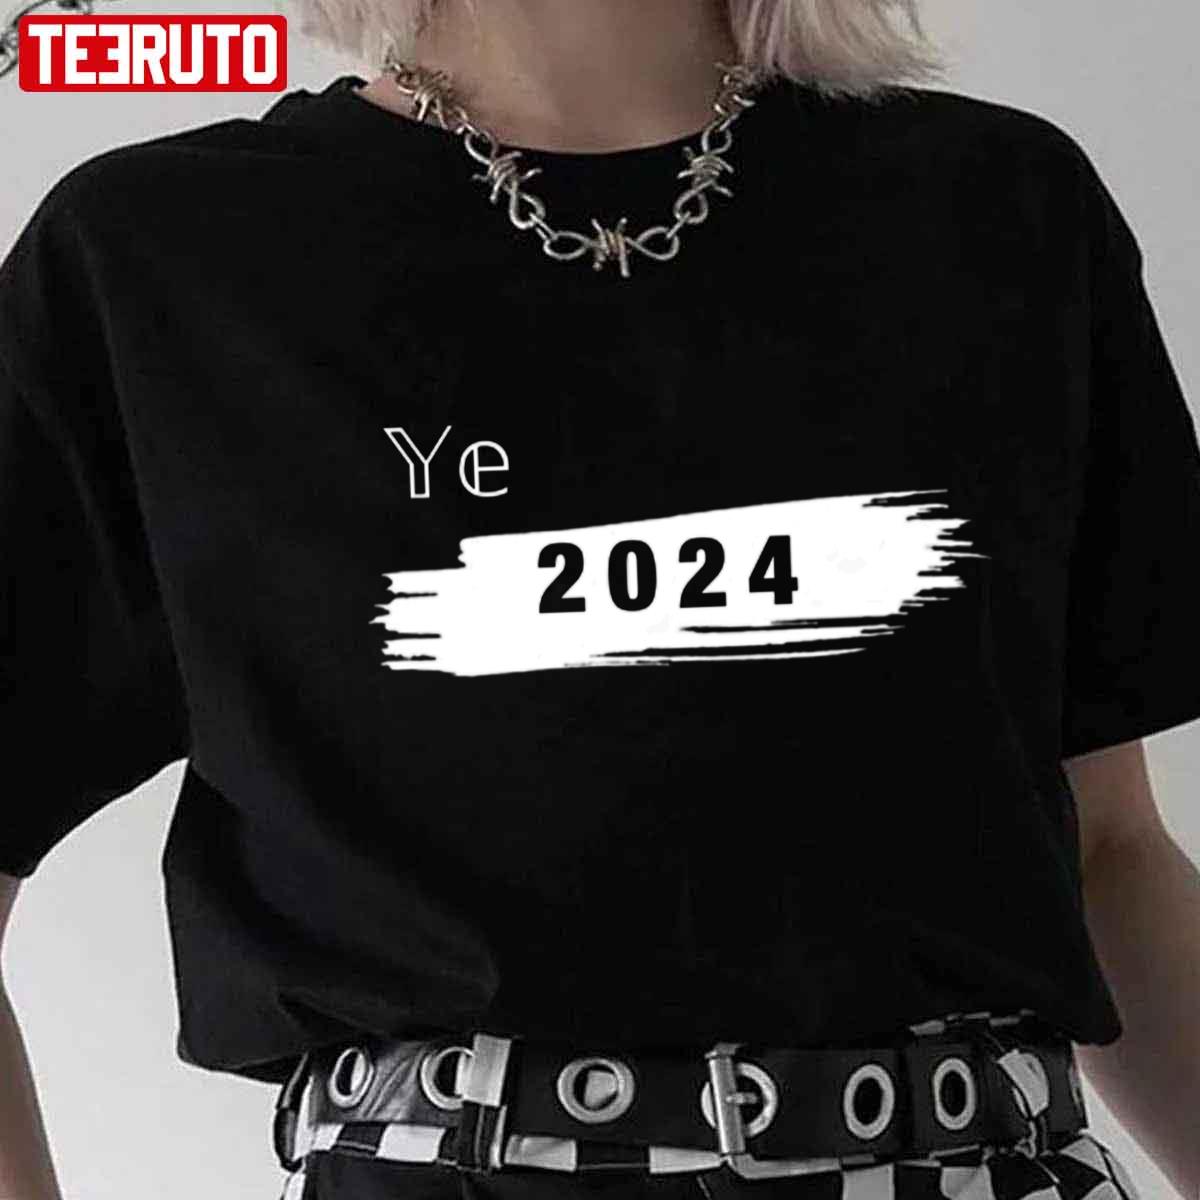 Ye Yeah 2024 Kanye West Unisex Tshirt Teeruto